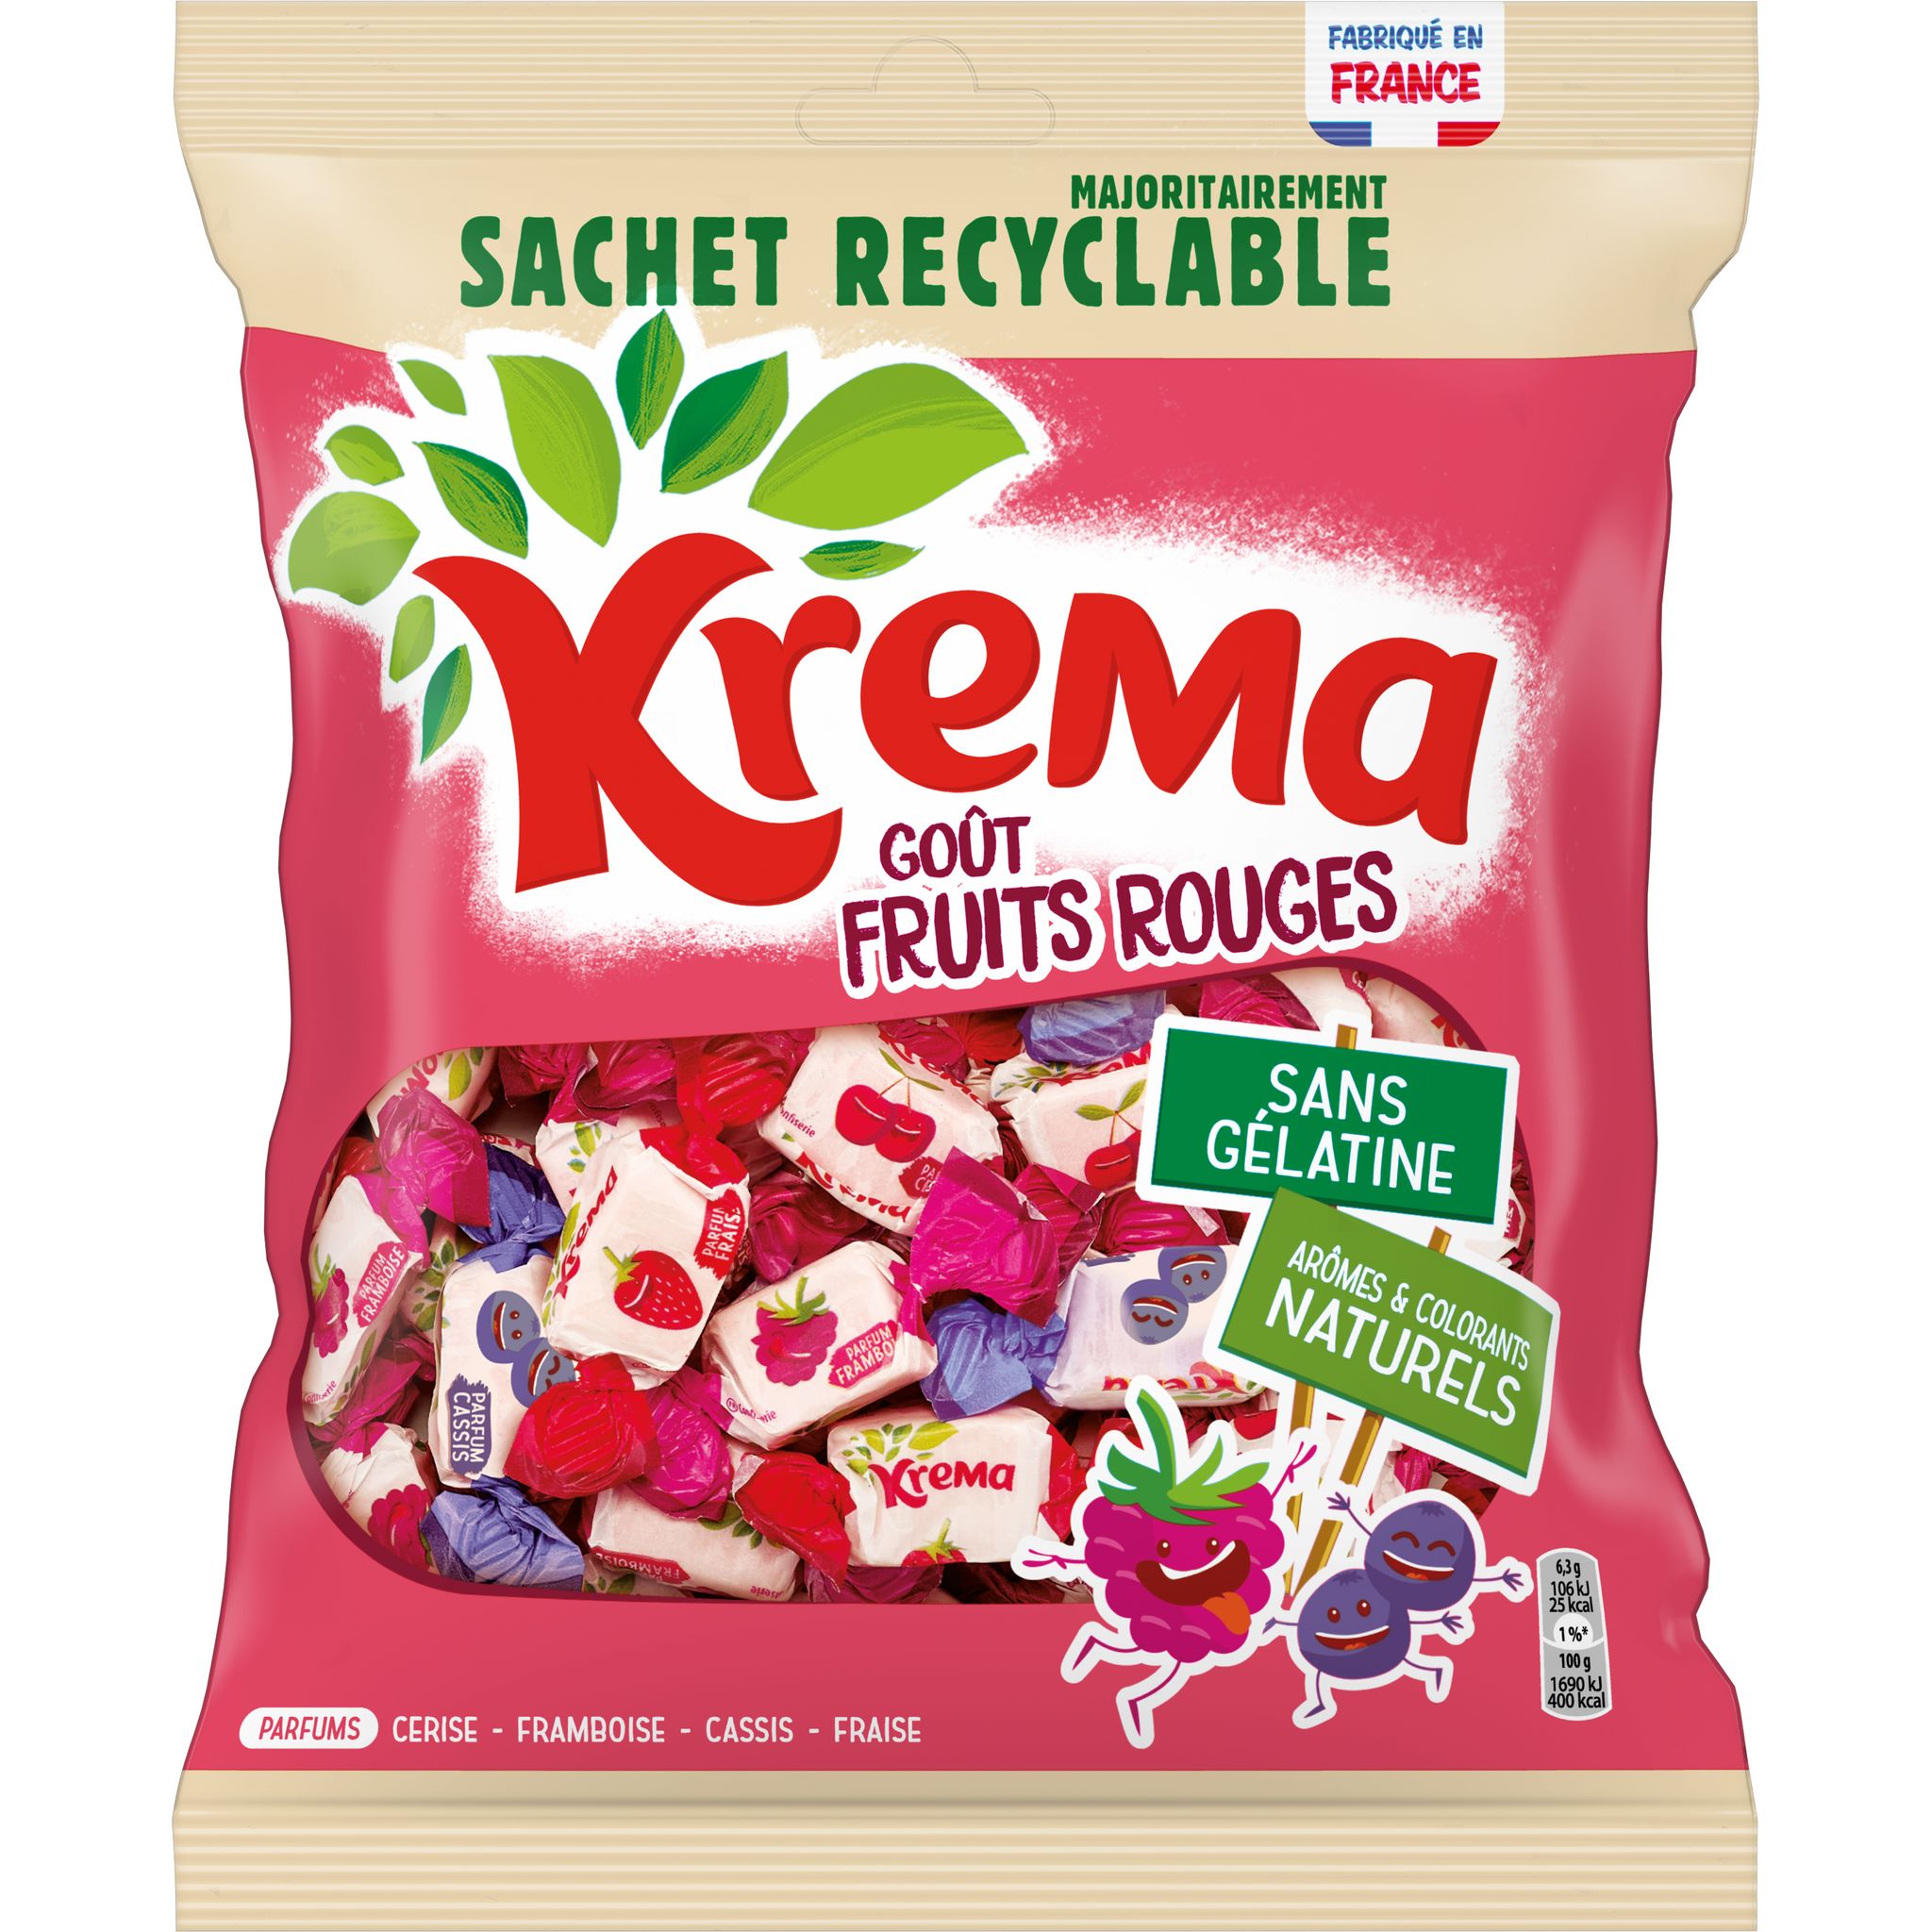 Bonbons : des Krema sans gélatine animale et bio - Al-Kanz